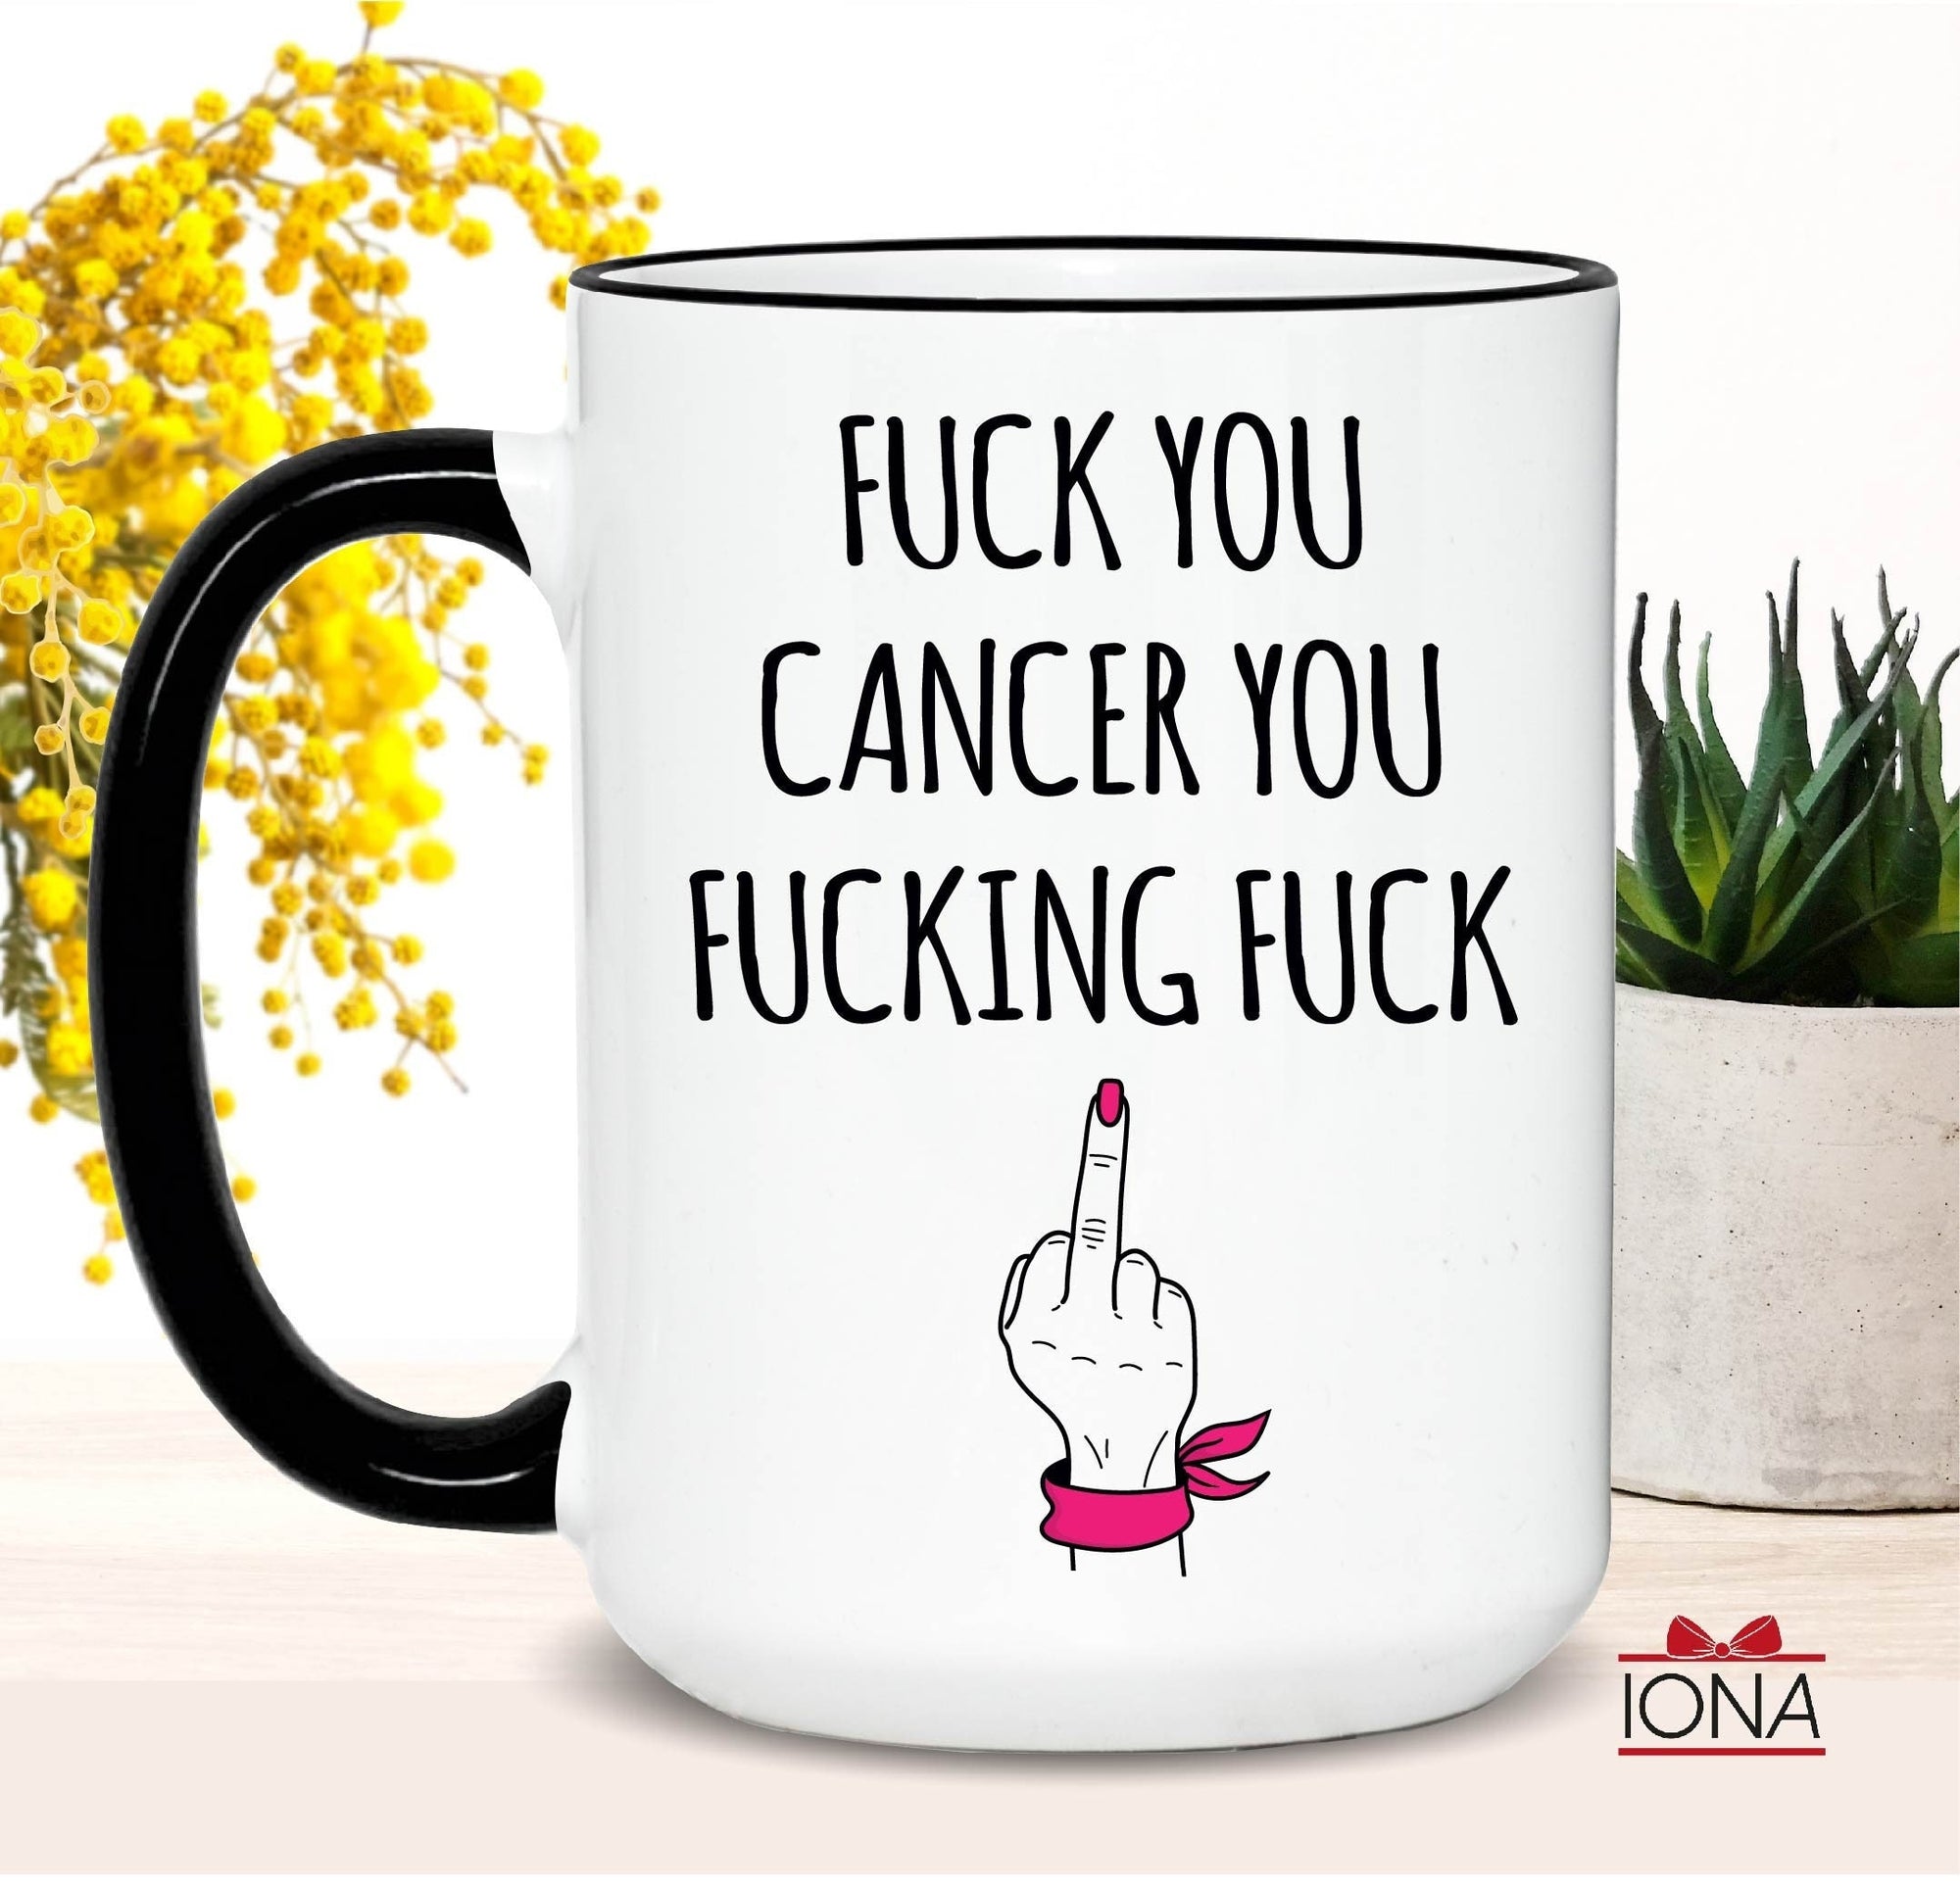 Fuck You Cancer You Fucking Fuck, Breast Cancer Awareness, Cancer Encouragement Gift, Warrior Gift, Cancer Fighter Gift, Cancer Survivor Mug